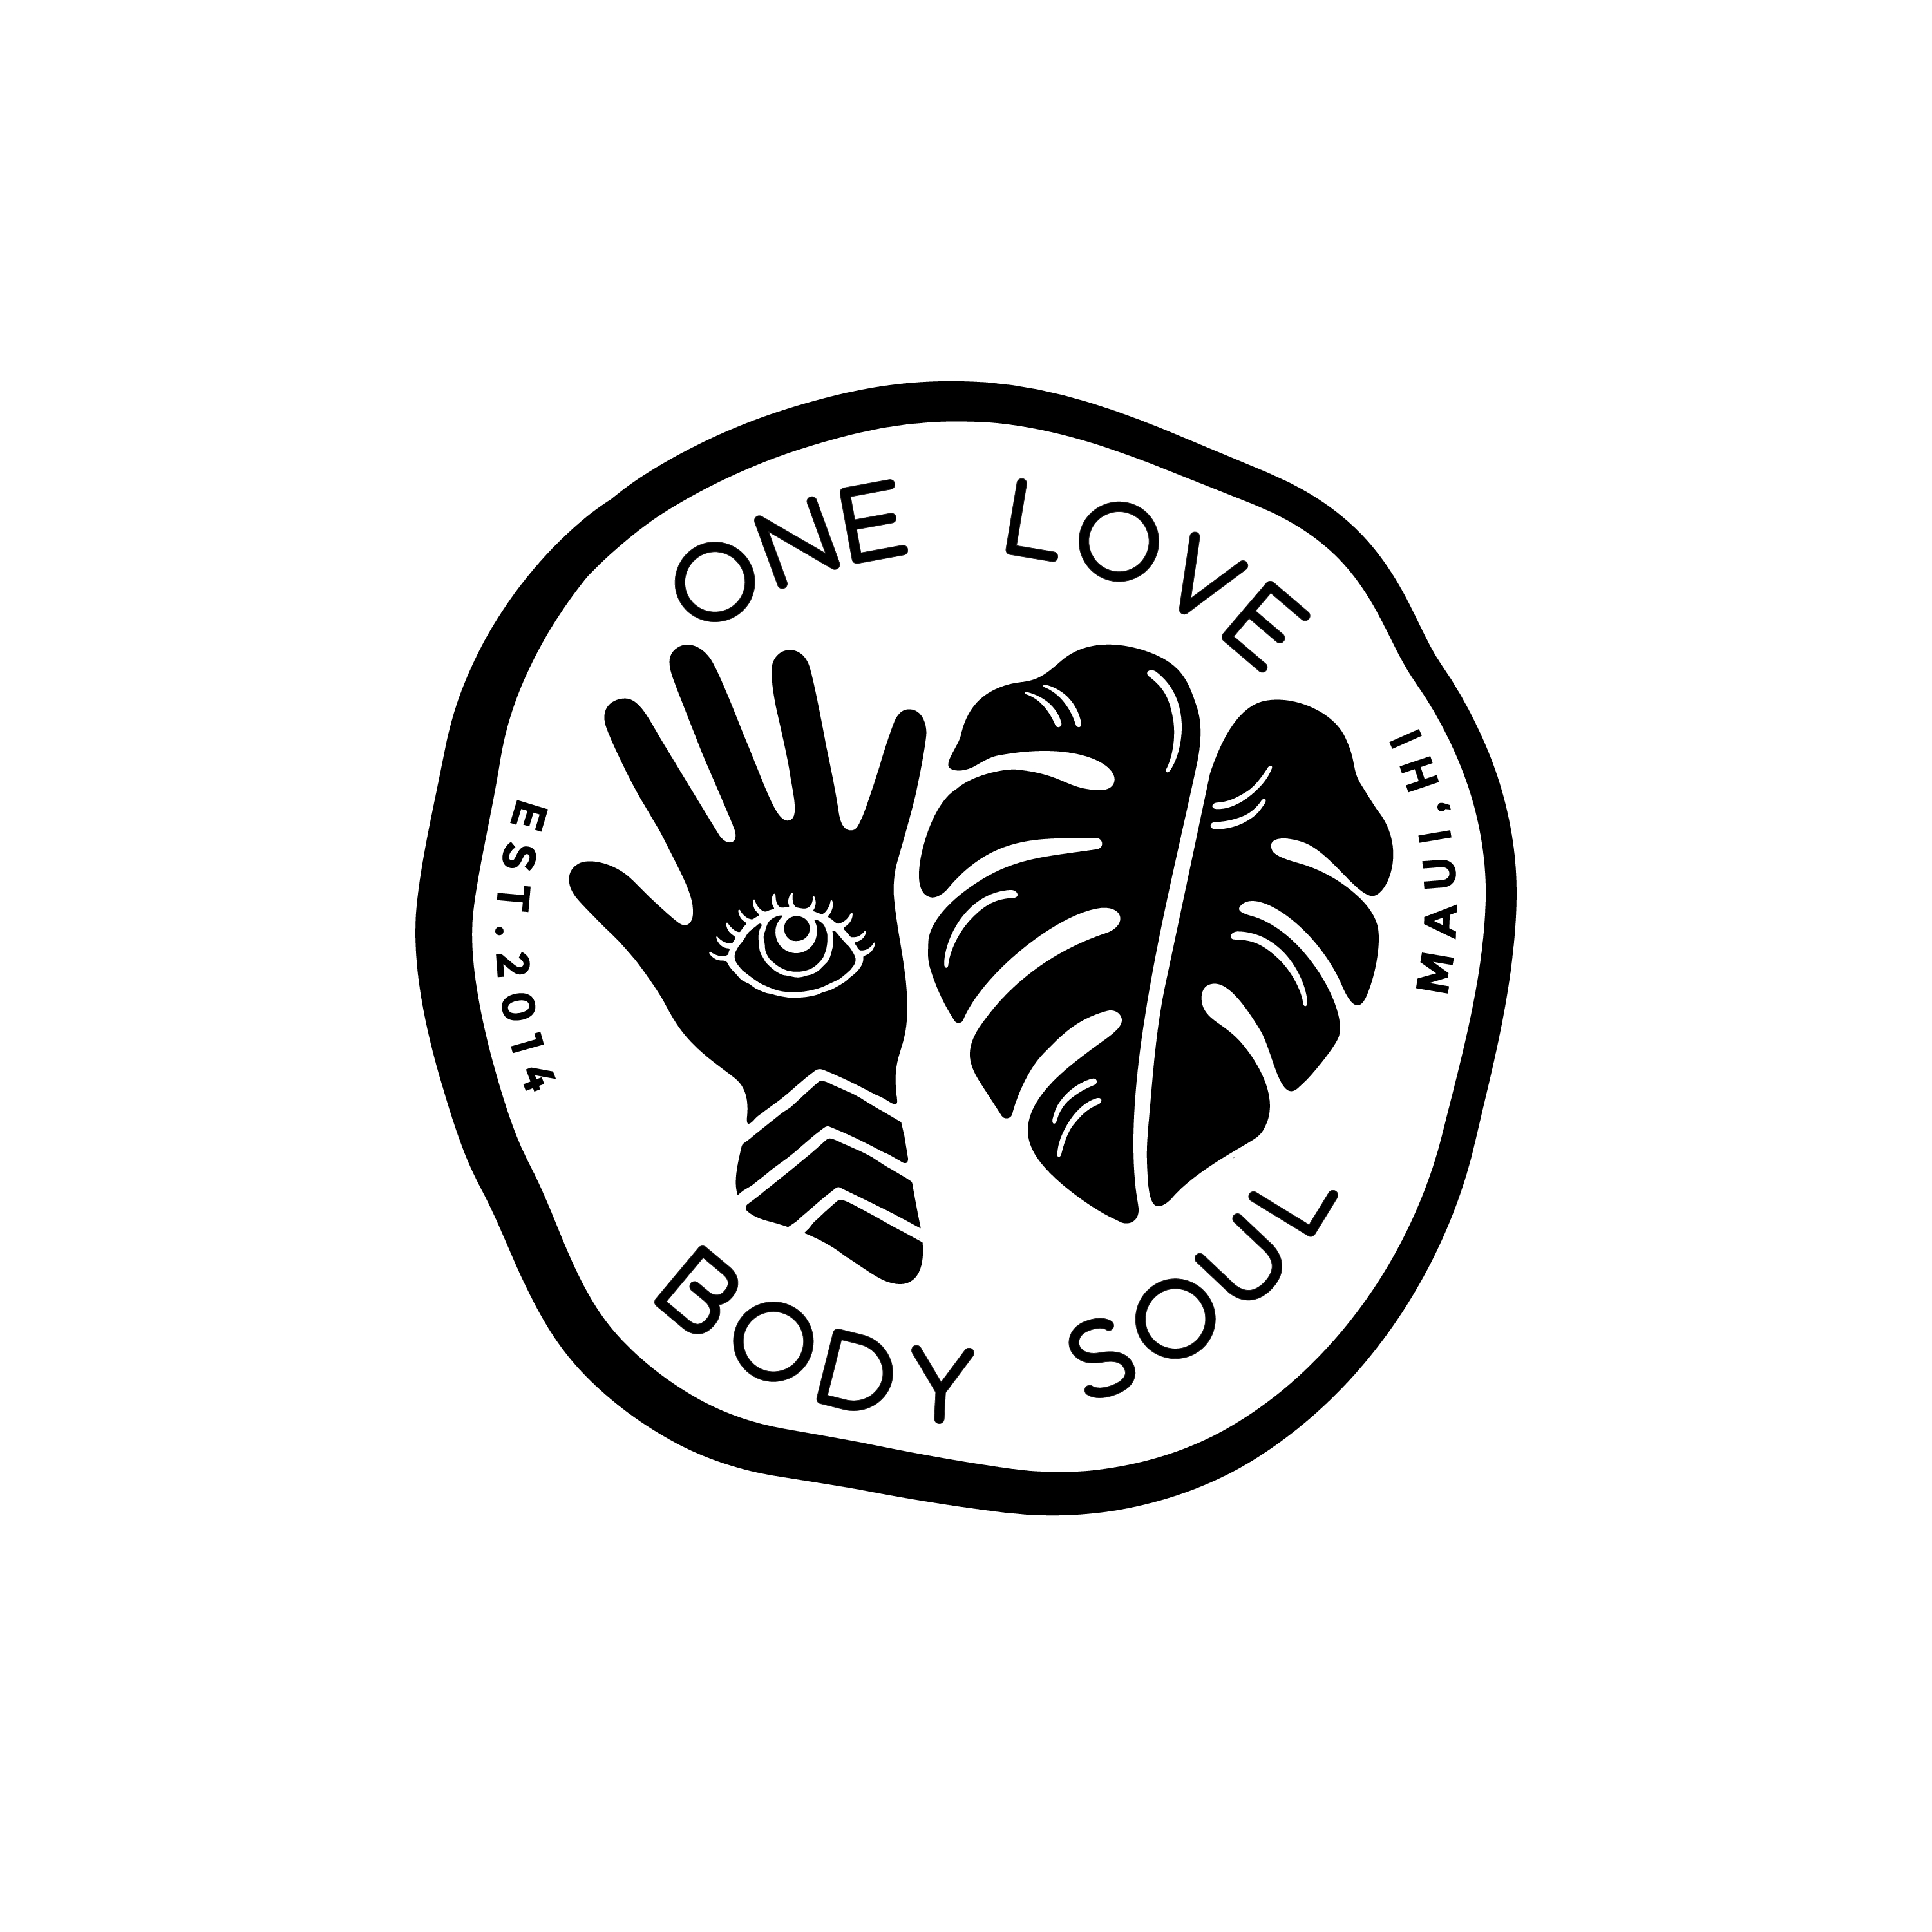 One Love Body Soul